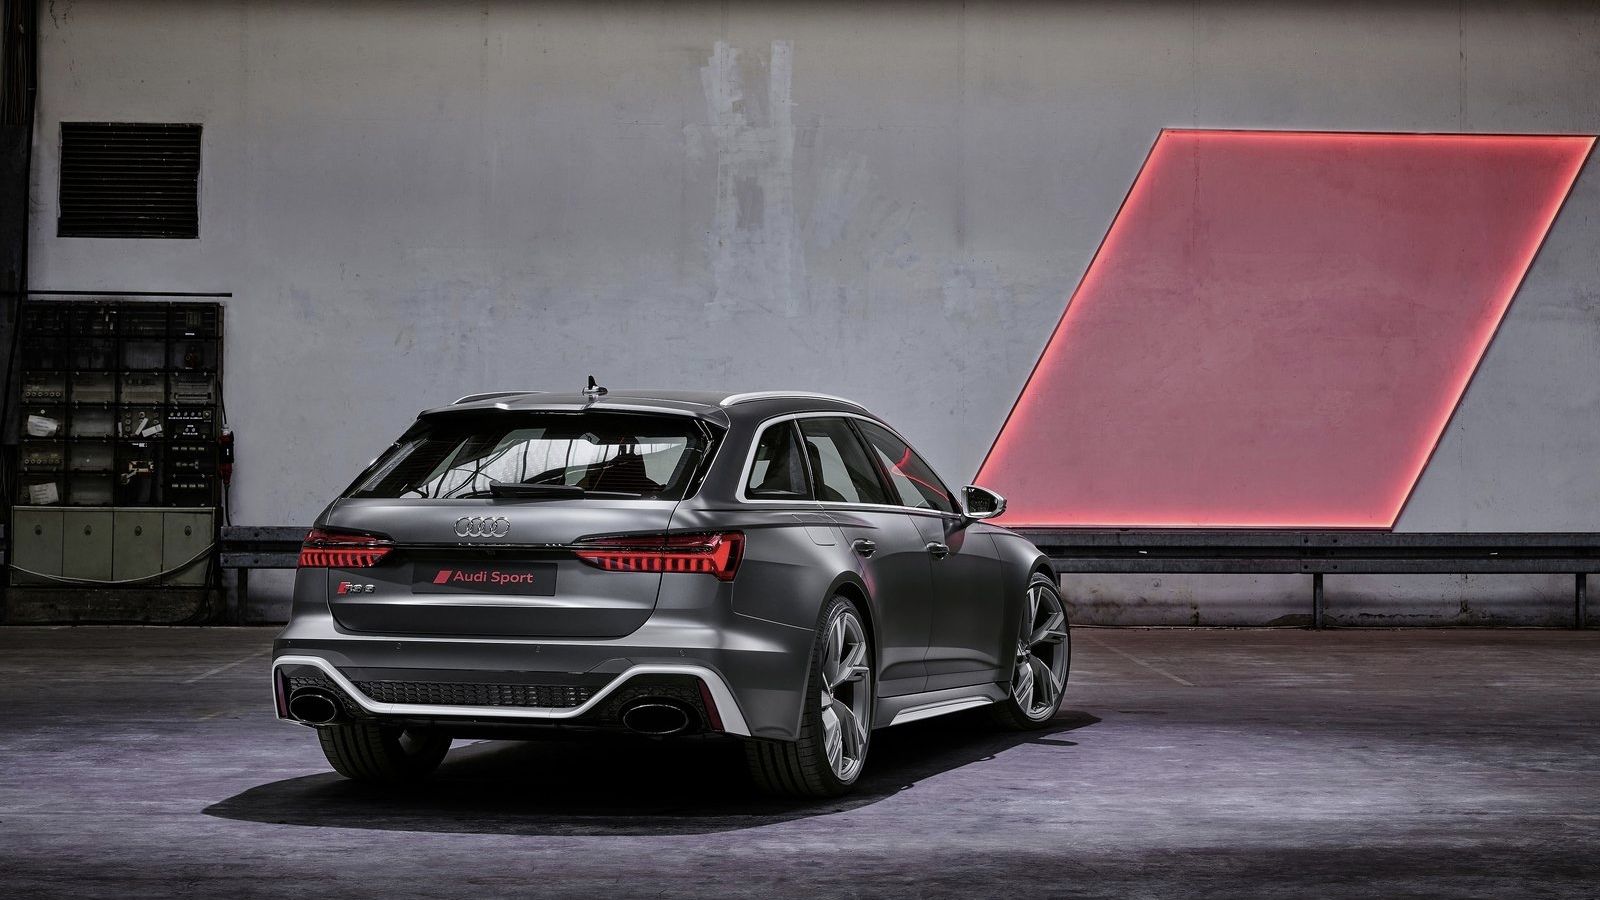 Kombi raketa Audi RS6 Avant dostáva úplne nový vzhľad a techniku